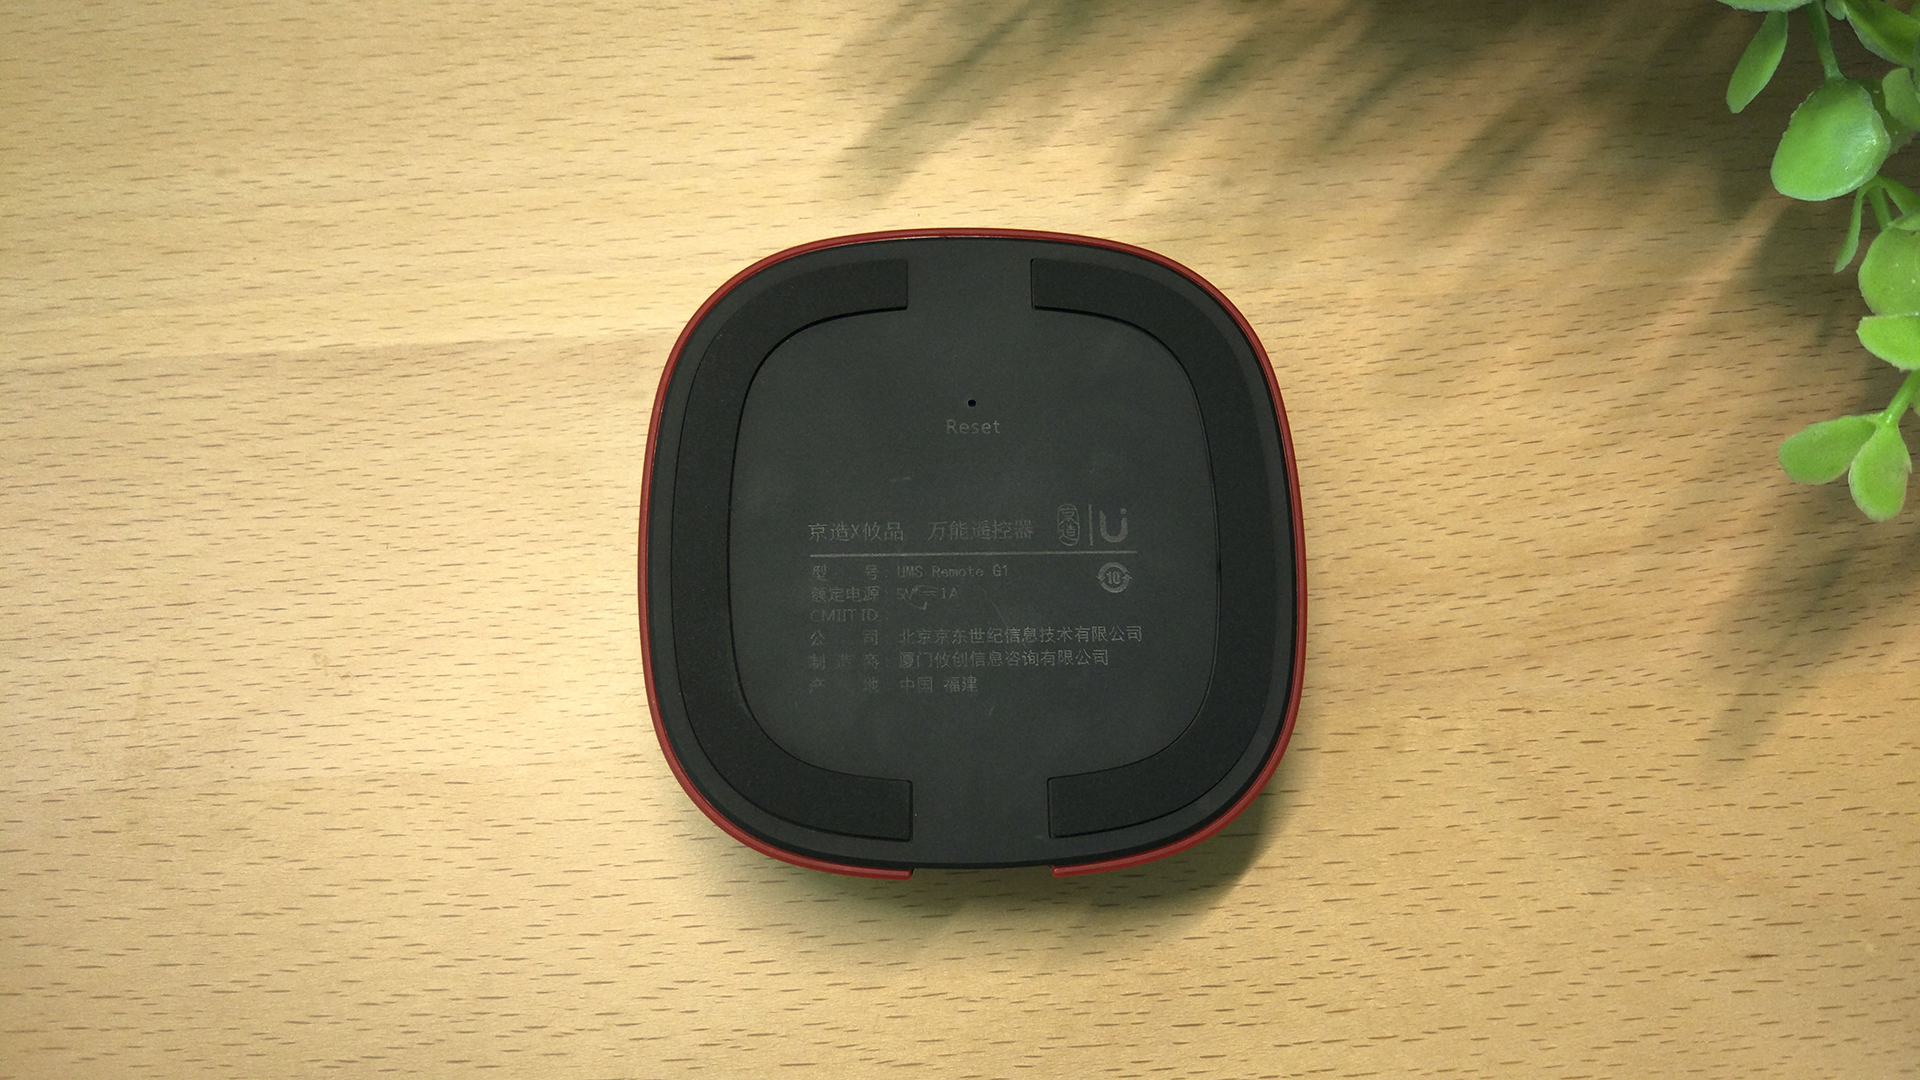 京东旗下黑果冻，遥控器就得玩智能的——UMS Remote G1遥控器